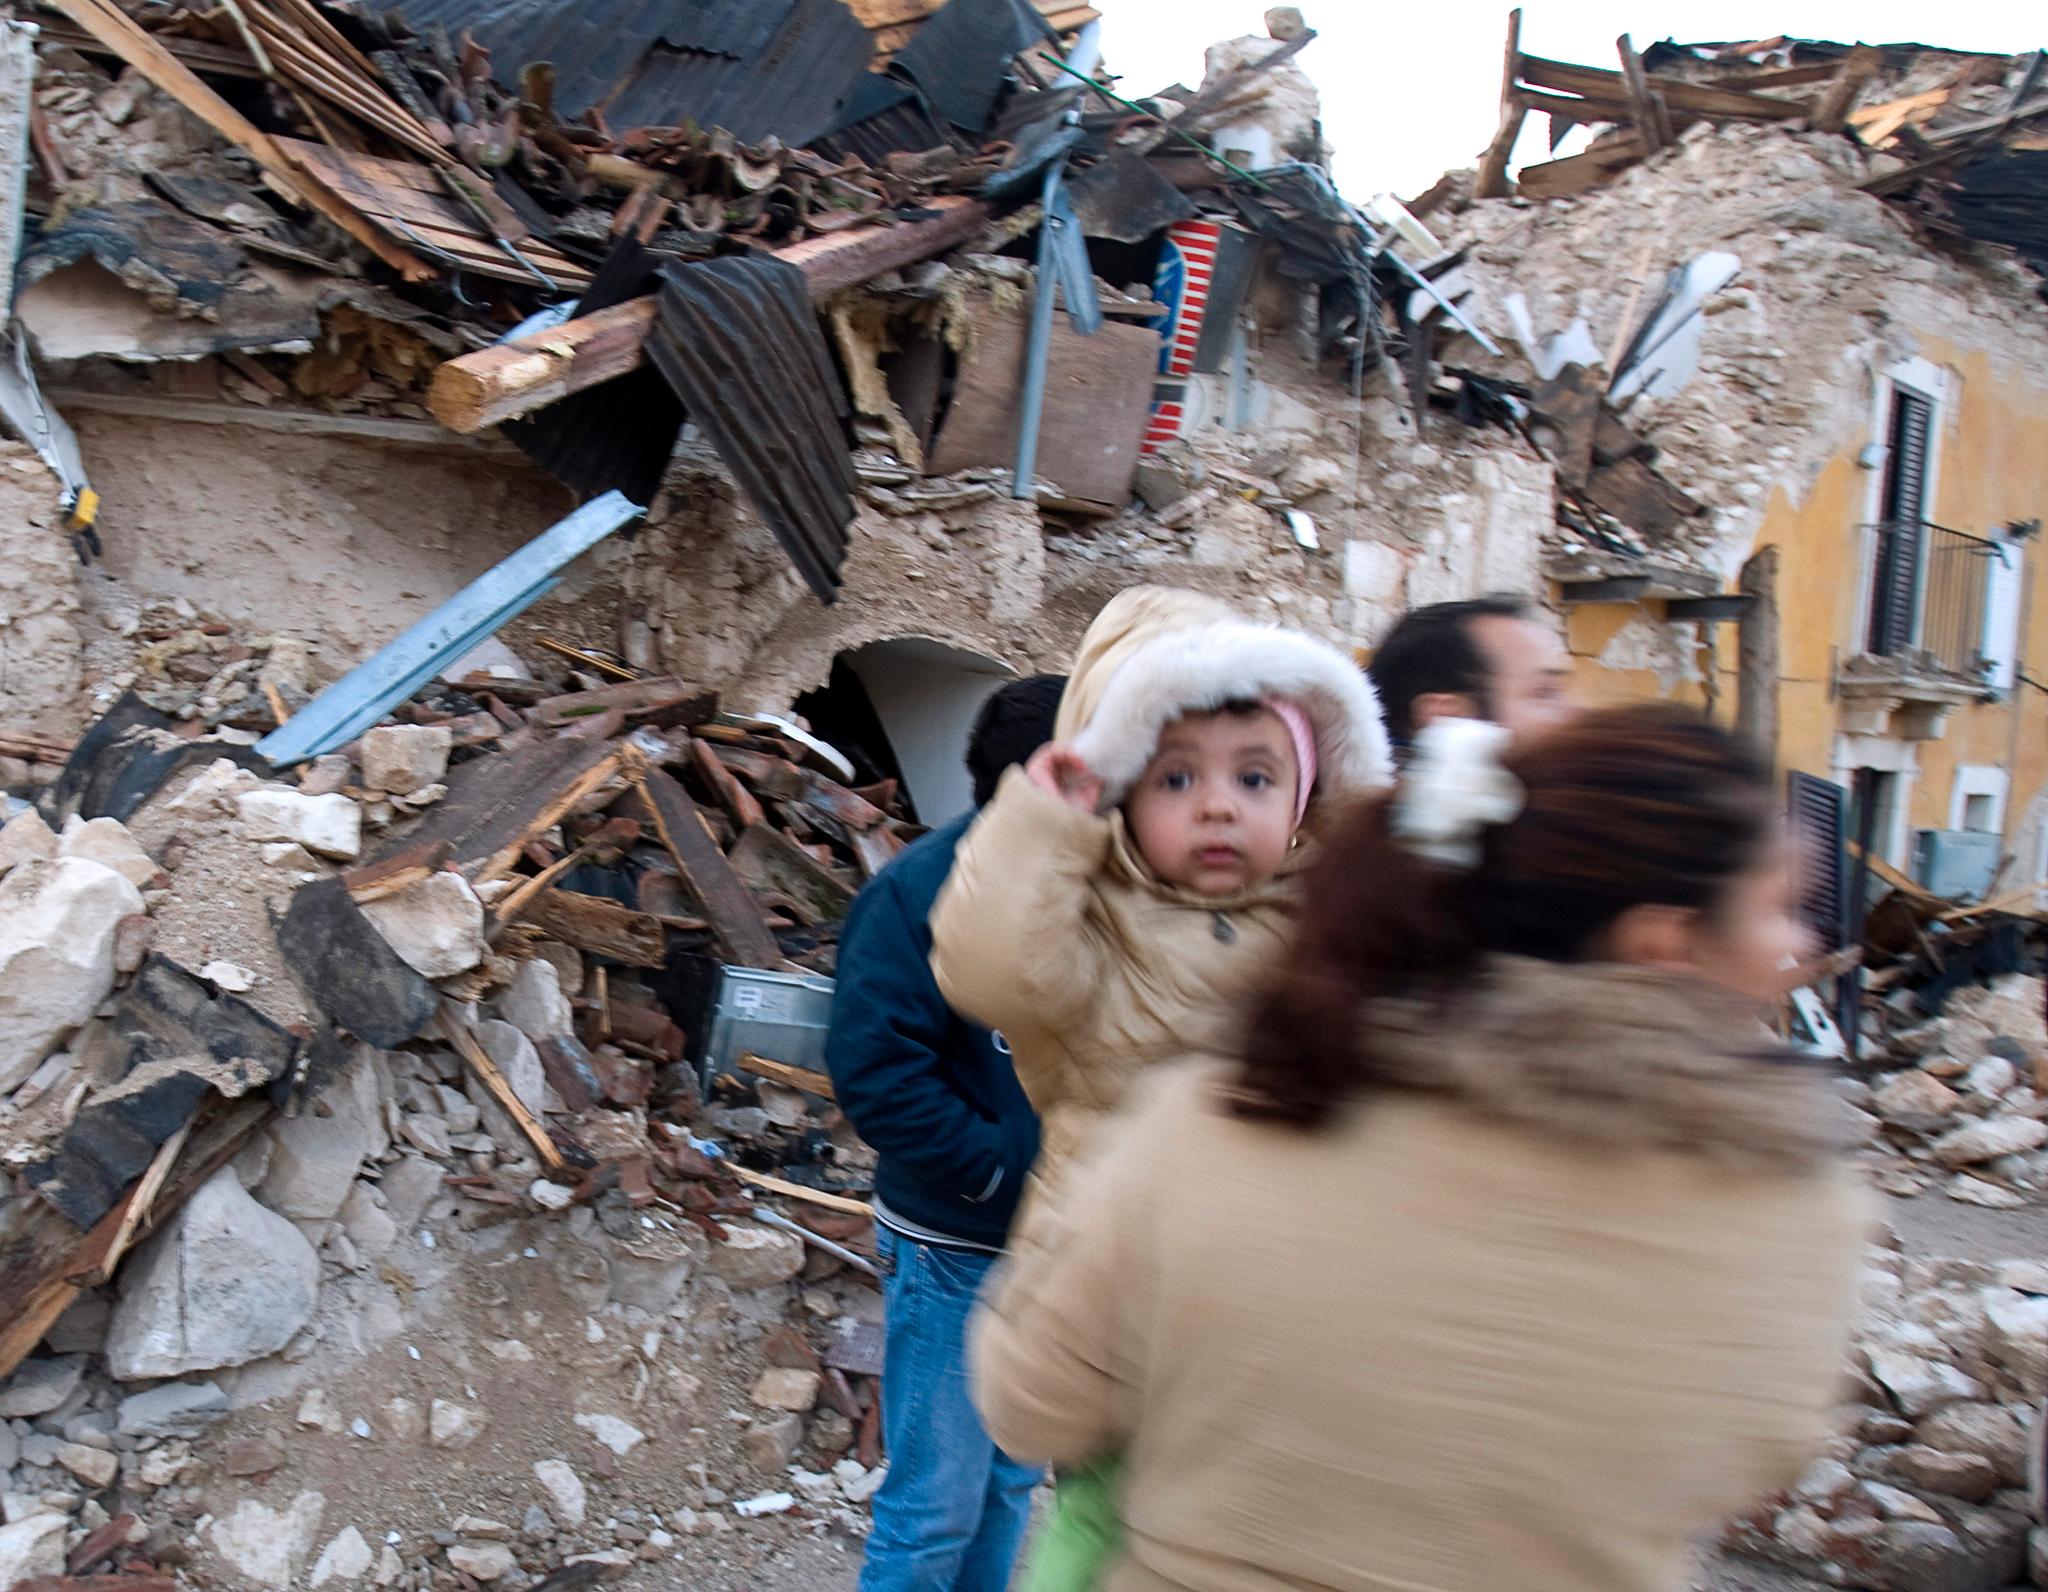 Dagens jordskjelv har mange likhetstrekk med skjelvet som rammet områder rundt byen L'Aquila i 2012, påpeker jordskjelvseksperter.